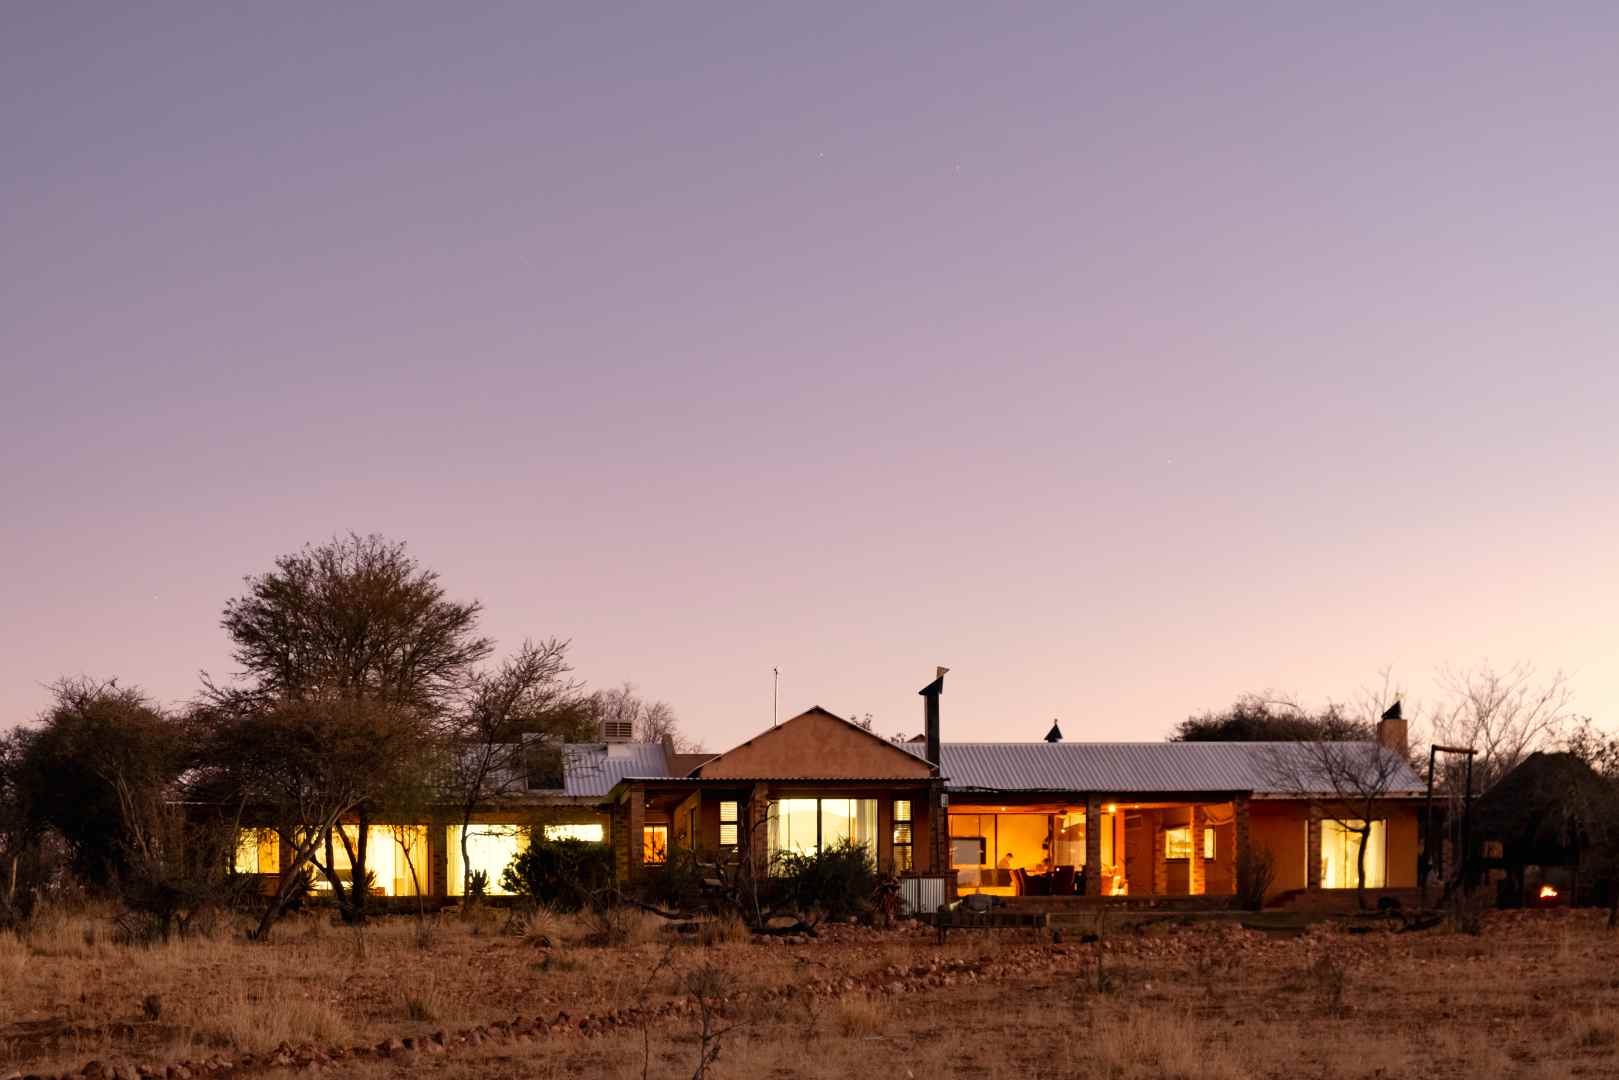 Home-Ex Immobilien: Ihr Schlüssel zum Traum vom Immobilienerwerb in Namibia Unsere Vorteile - Einzigartige Immobilien Wir bieten eine breite Auswahl an Wohnimmobilien, die auf Ihre individuellen Bedürfnisse und Vorlieben zugeschnitten sind.